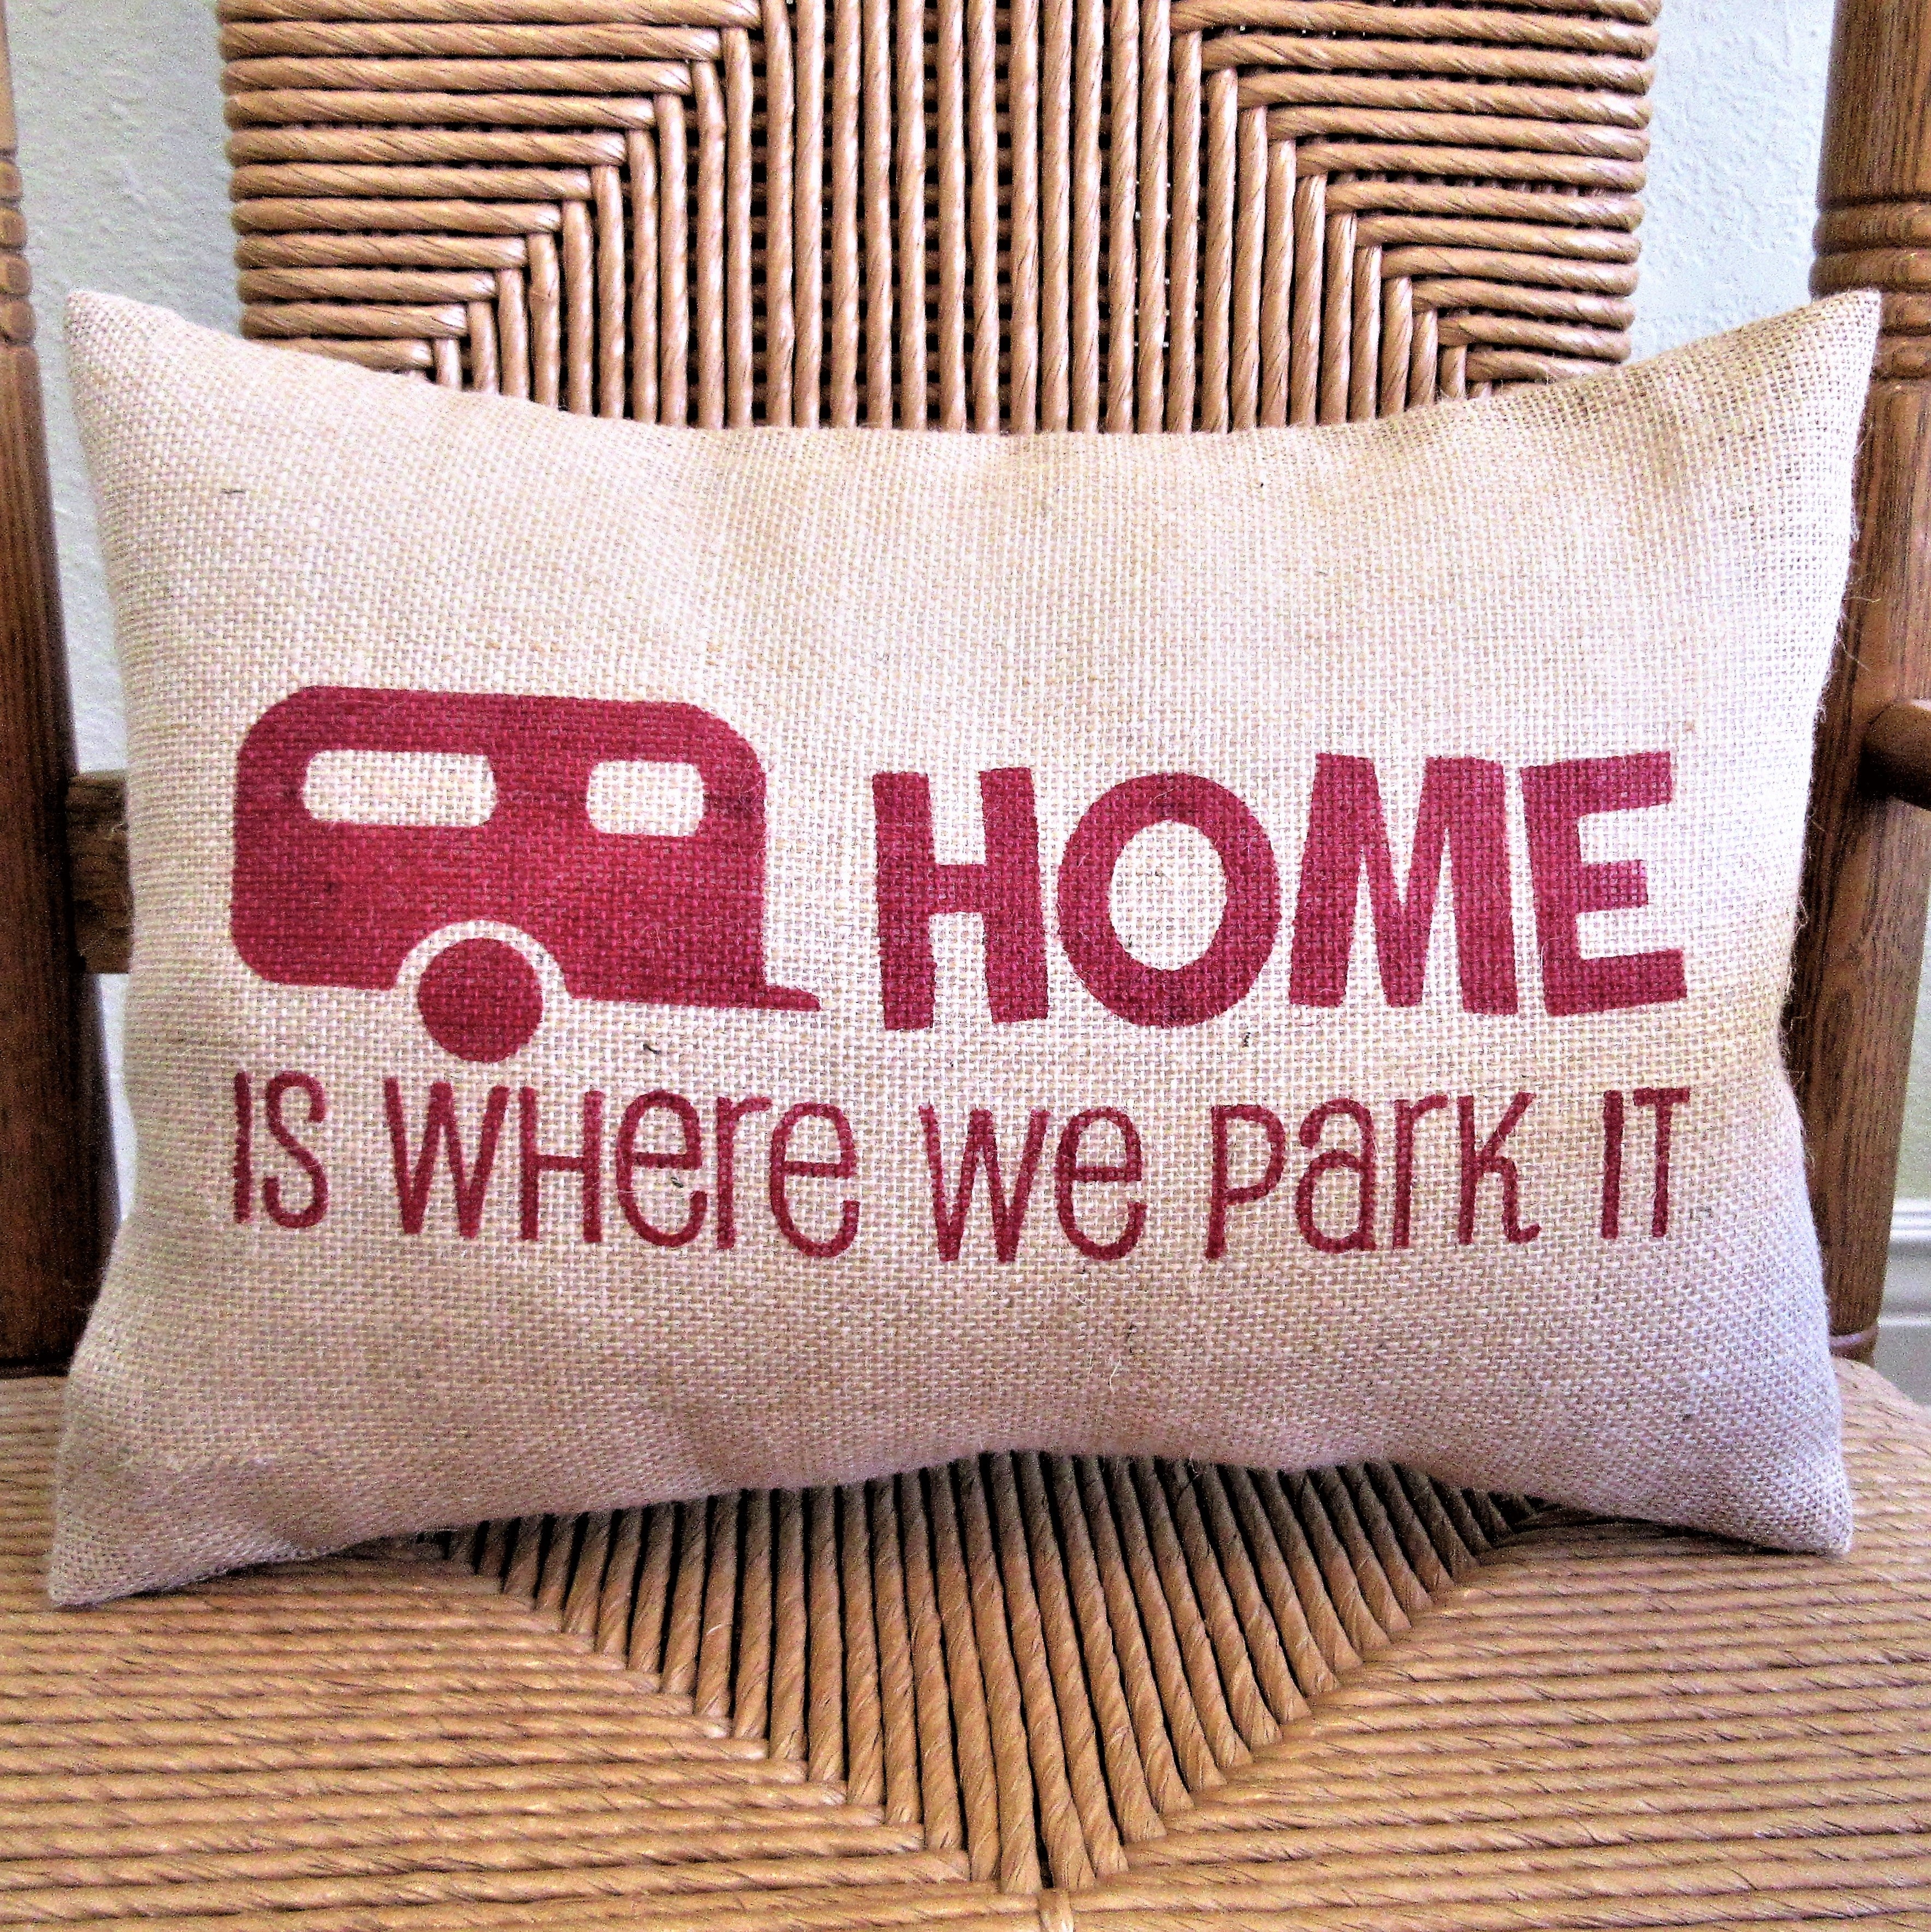 Home is Where we park it Burlap Pillow